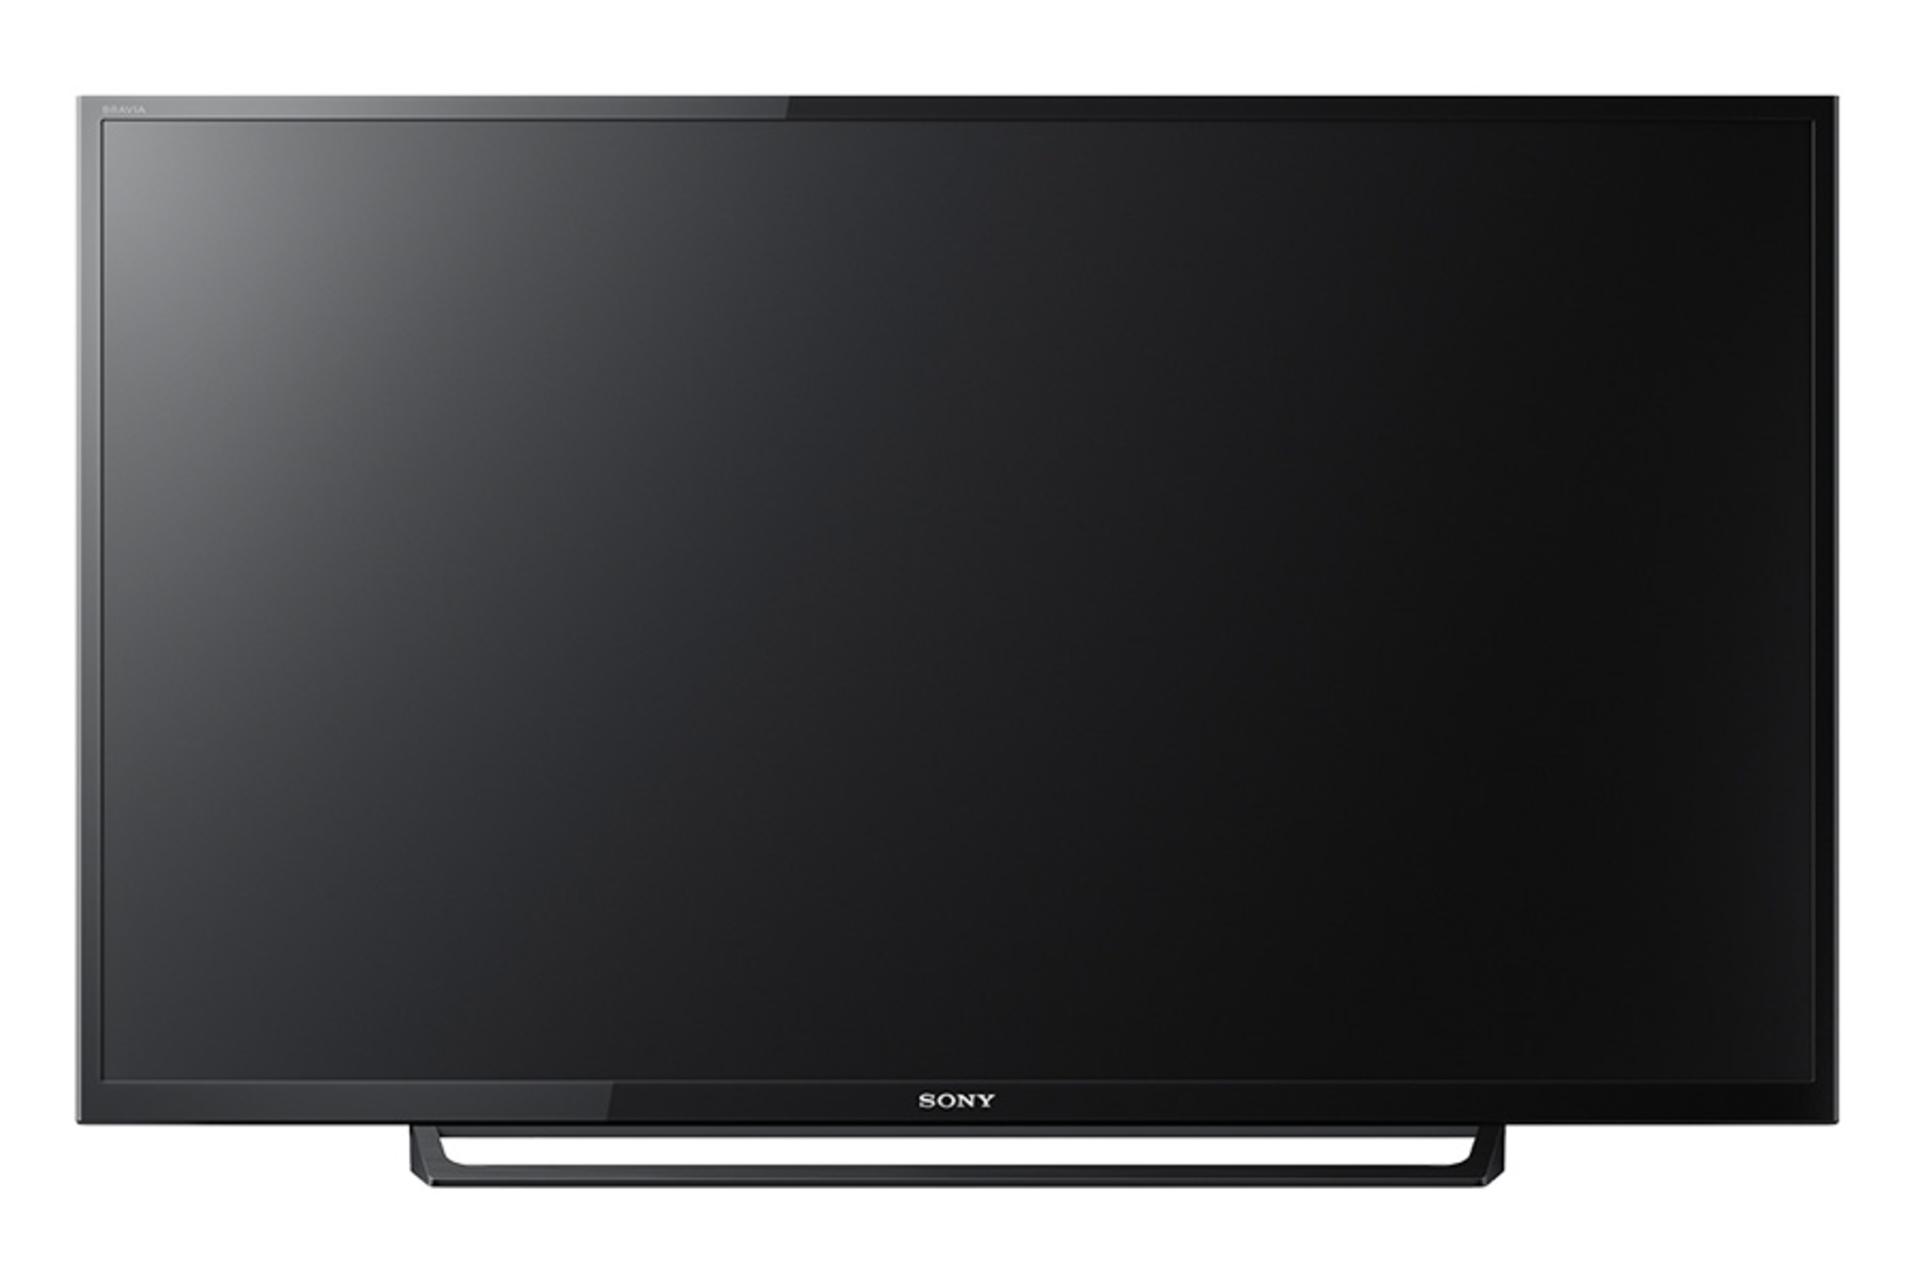 نمای جلو تلویزیون سونی R300E مدل 32 اینچ با پایه مرکزی مسطح